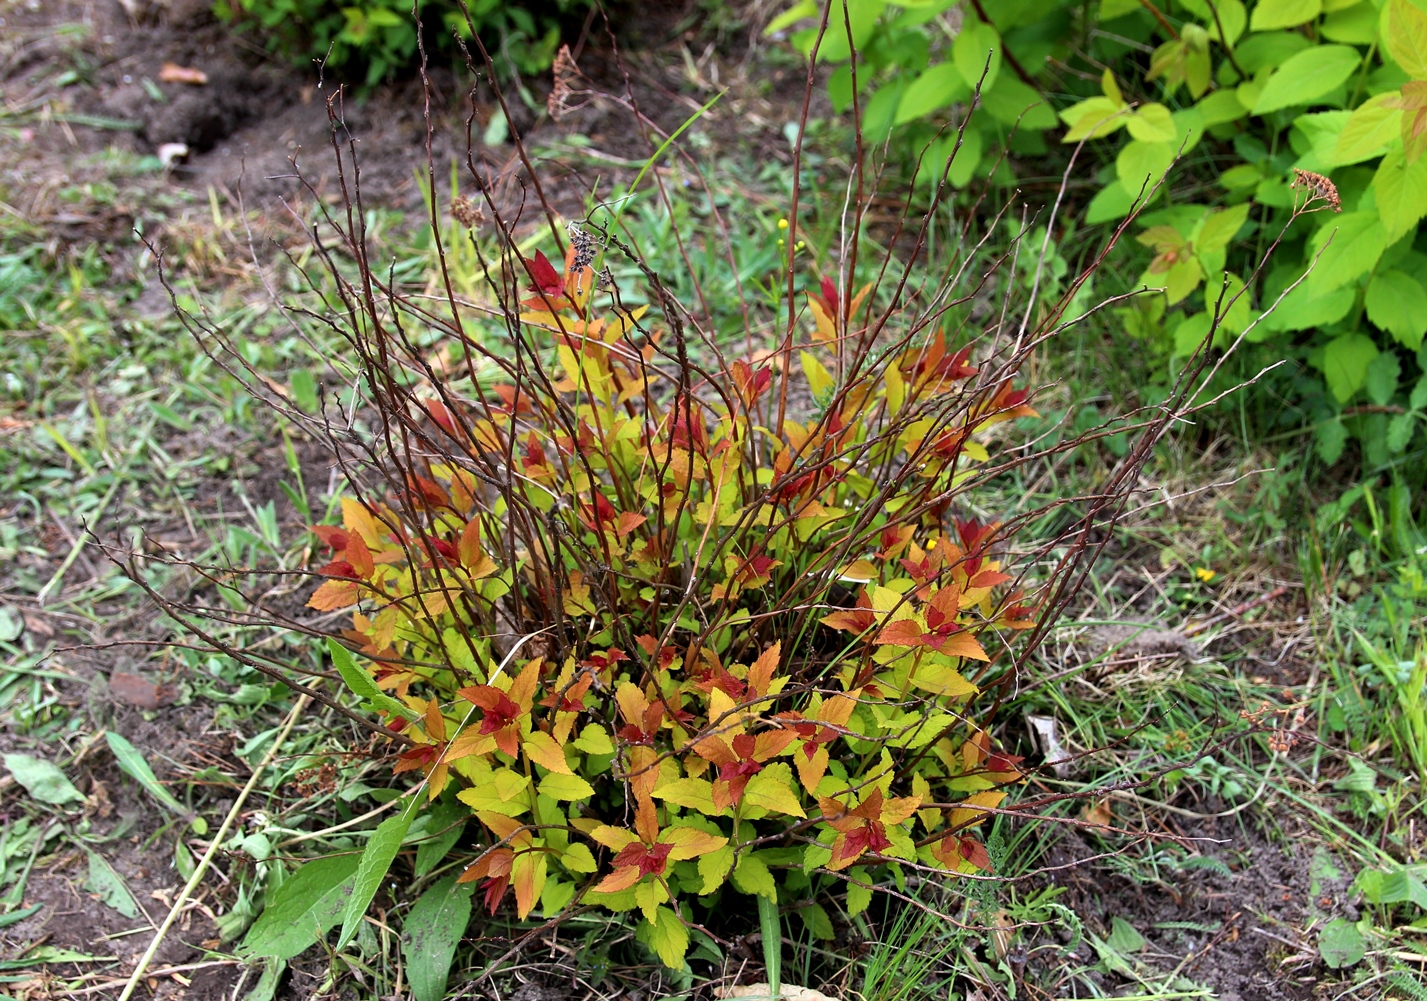 Spiraea japonica ‘Walbuma’. Сорт британского происхождения. Не удивительно, что у нас устойчивость этого сорта заметно хромает. Фото Горошкевича С.Н.